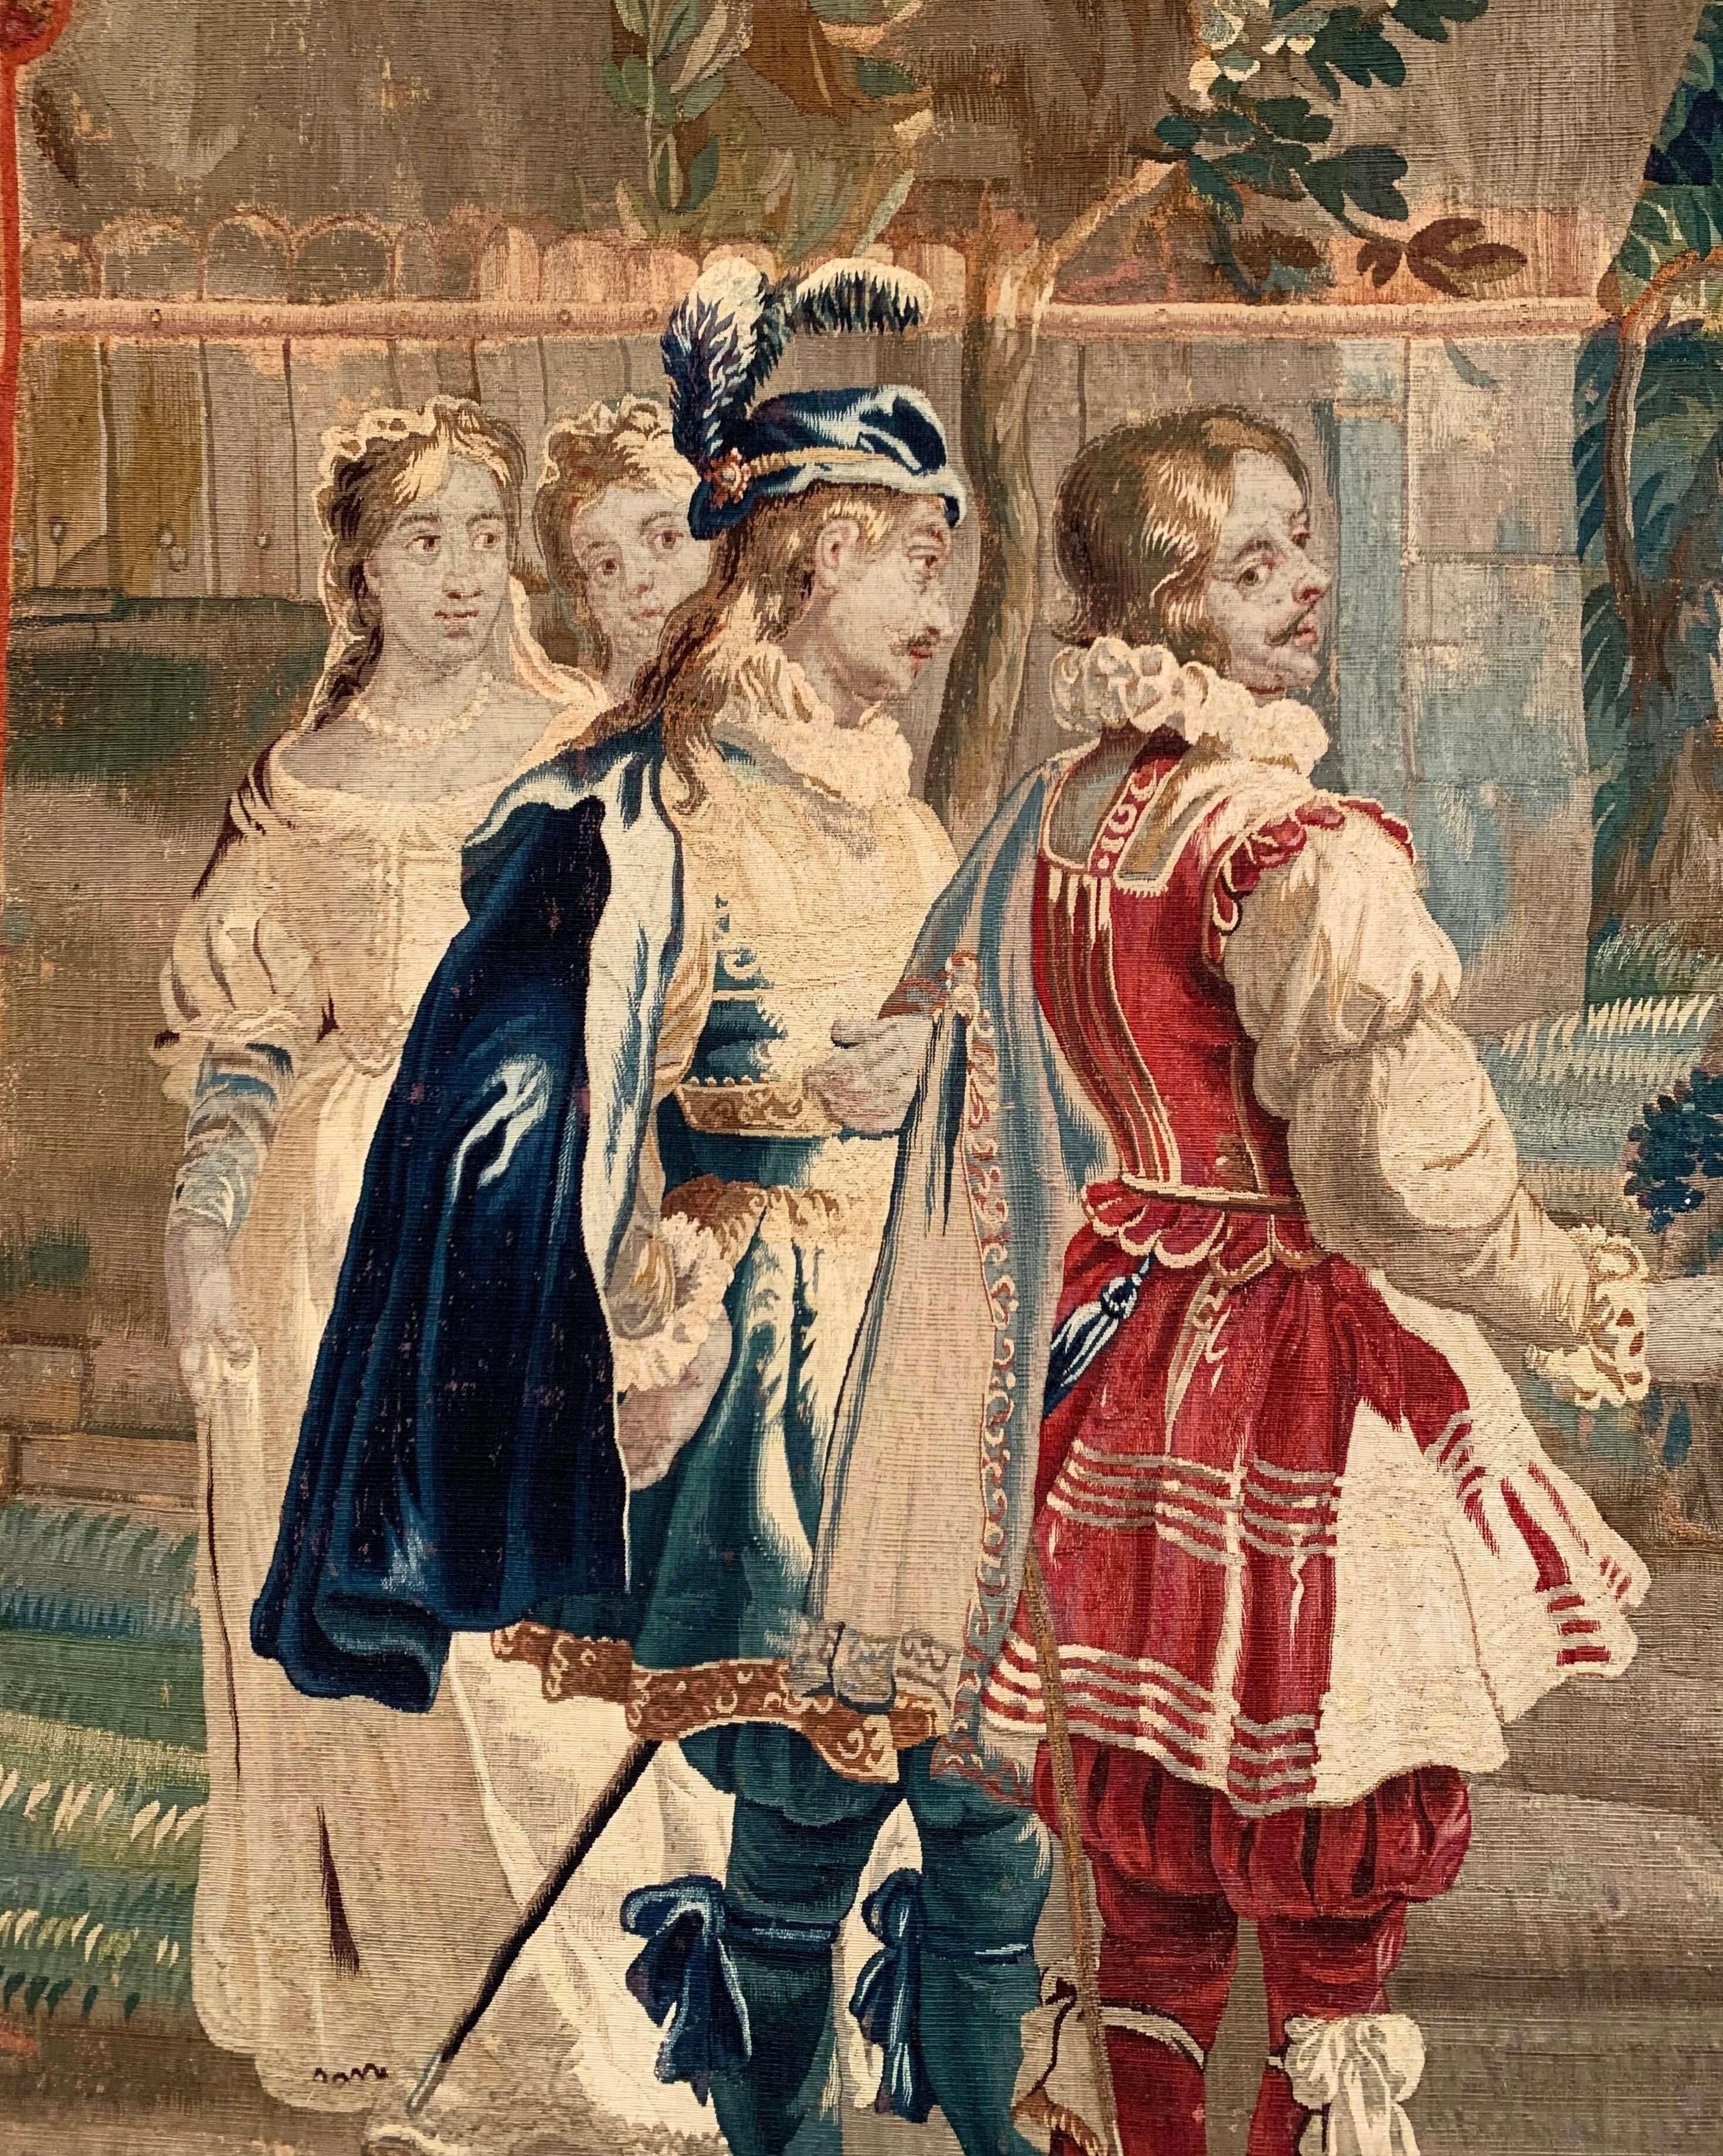 Cette élégante tapisserie ancienne a été créée à Aubusson, en France, vers 1780, et faisait probablement partie d'une boiserie murale. Présentée dans son cadre d'origine en chêne sculpté avec des coins décoratifs en retrait, cette grande tapisserie